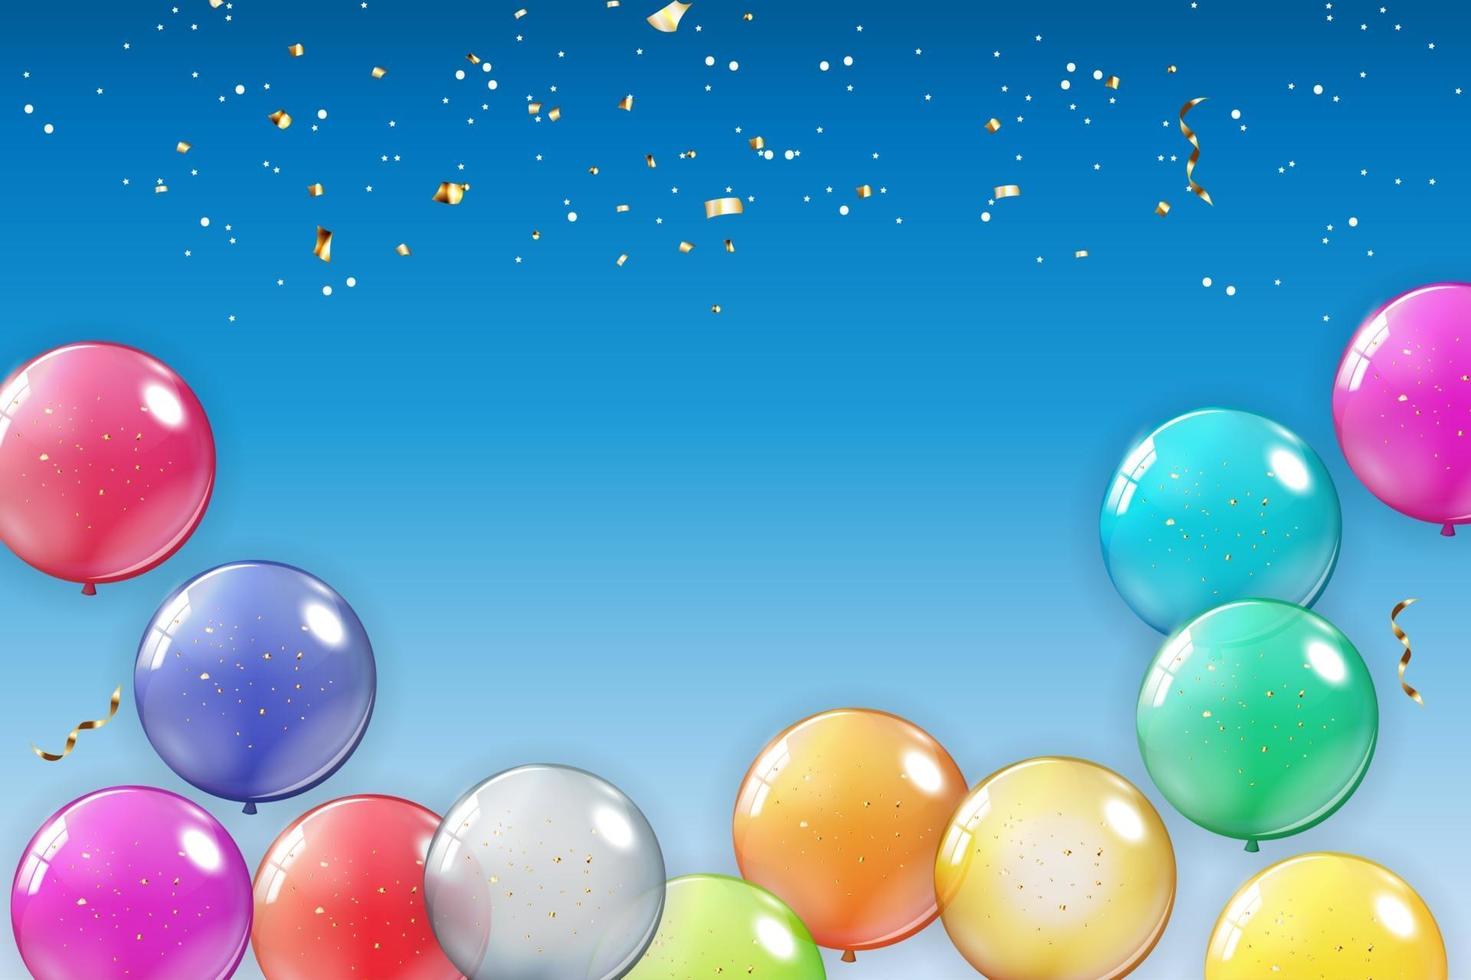 semester bakgrund med ballonger. kan användas för reklam, reklam och födelsedagskort eller inbjudan. vektor illustration